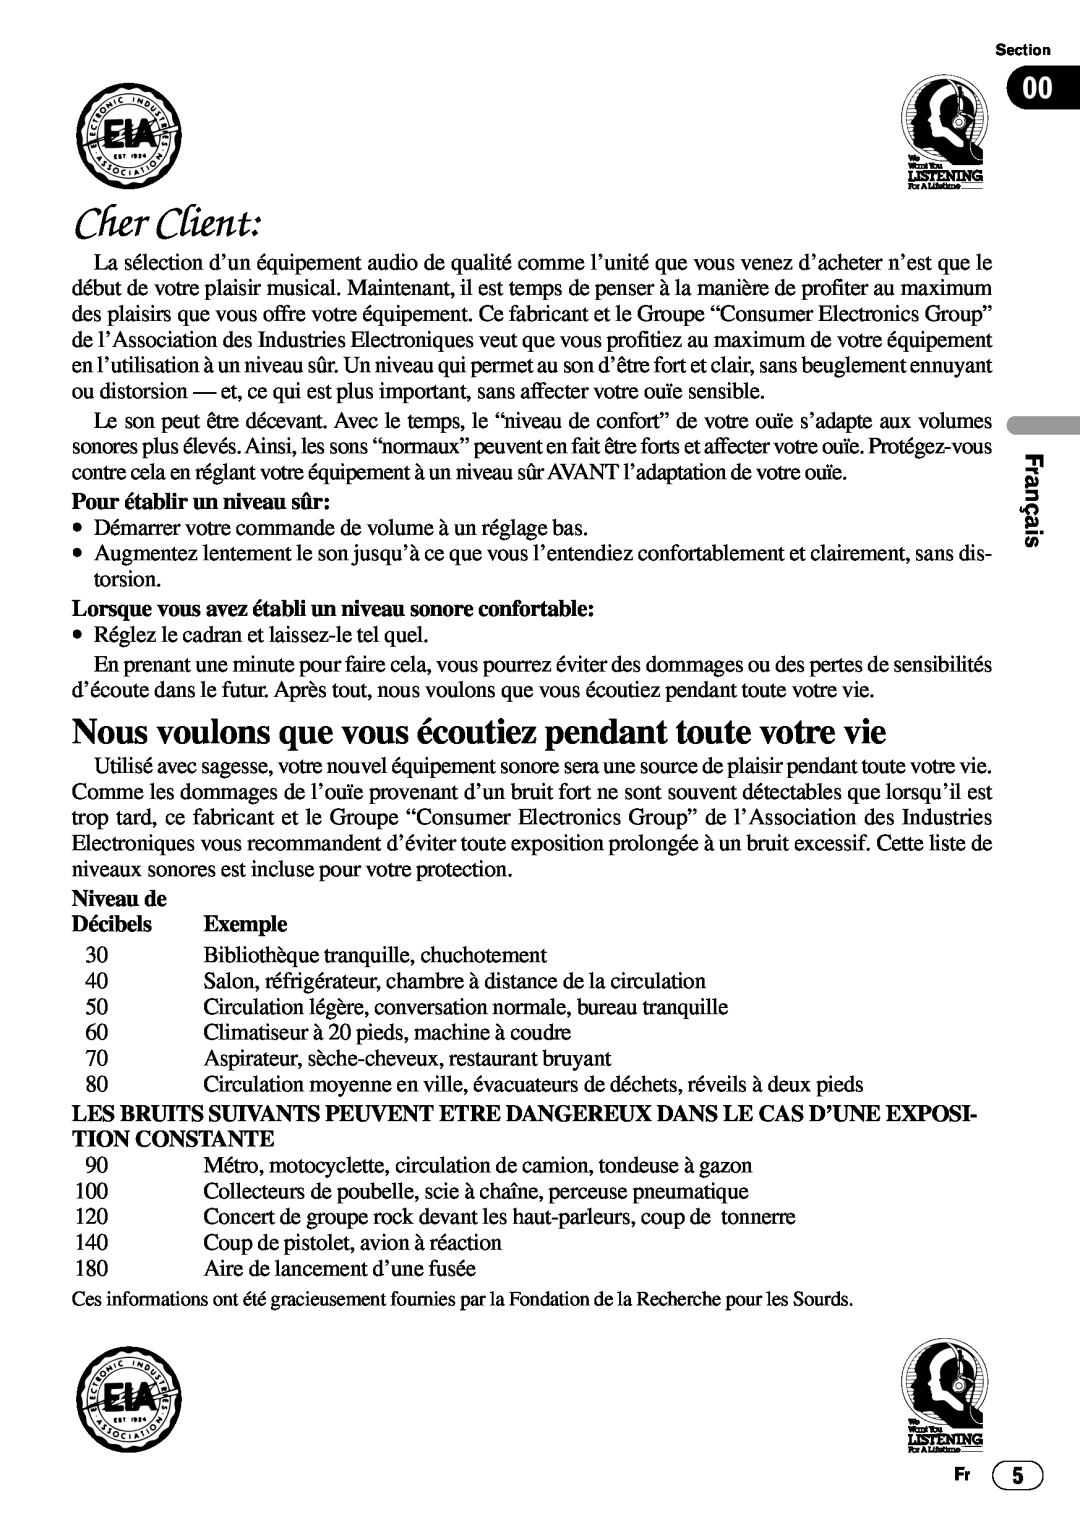 Pioneer DEH-P6400 English, Français Deutsch, Pour établir un niveau sûr, Niveau de, Décibels, Exemple, Cher Client 